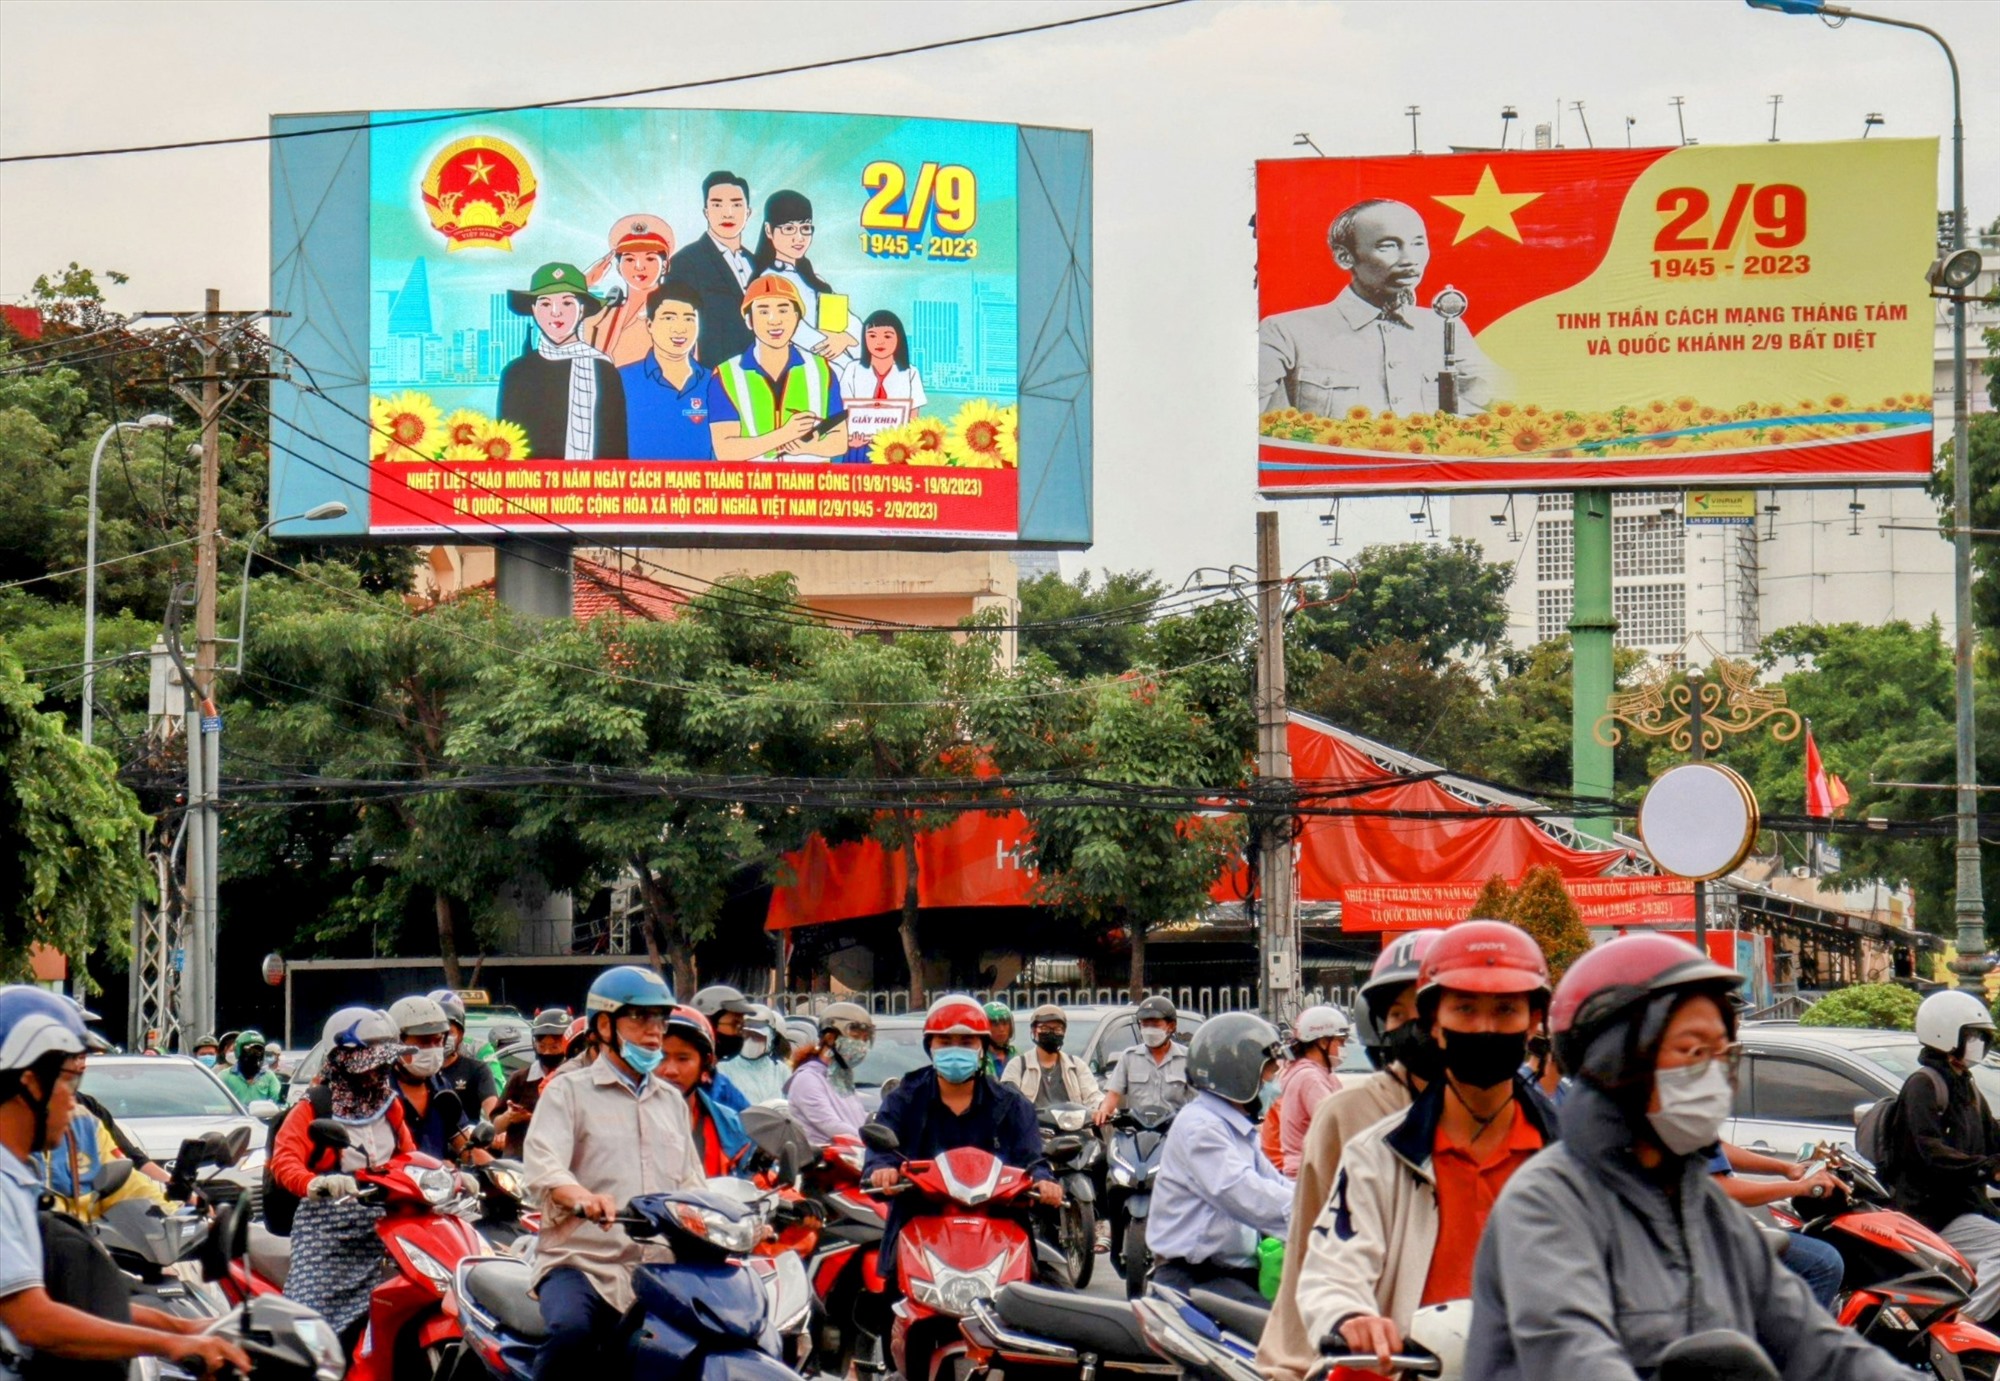   Trên các tuyến đường trung tâm TPHCM như Nguyễn Thị Minh Khai, Đồng Khởi, Lê Duẩn, Nguyễn Huệ,…được trang hoàng cờ hoa, pano tuyên truyền cổ động để chào mừng 78 năm Quốc khánh 2.9.